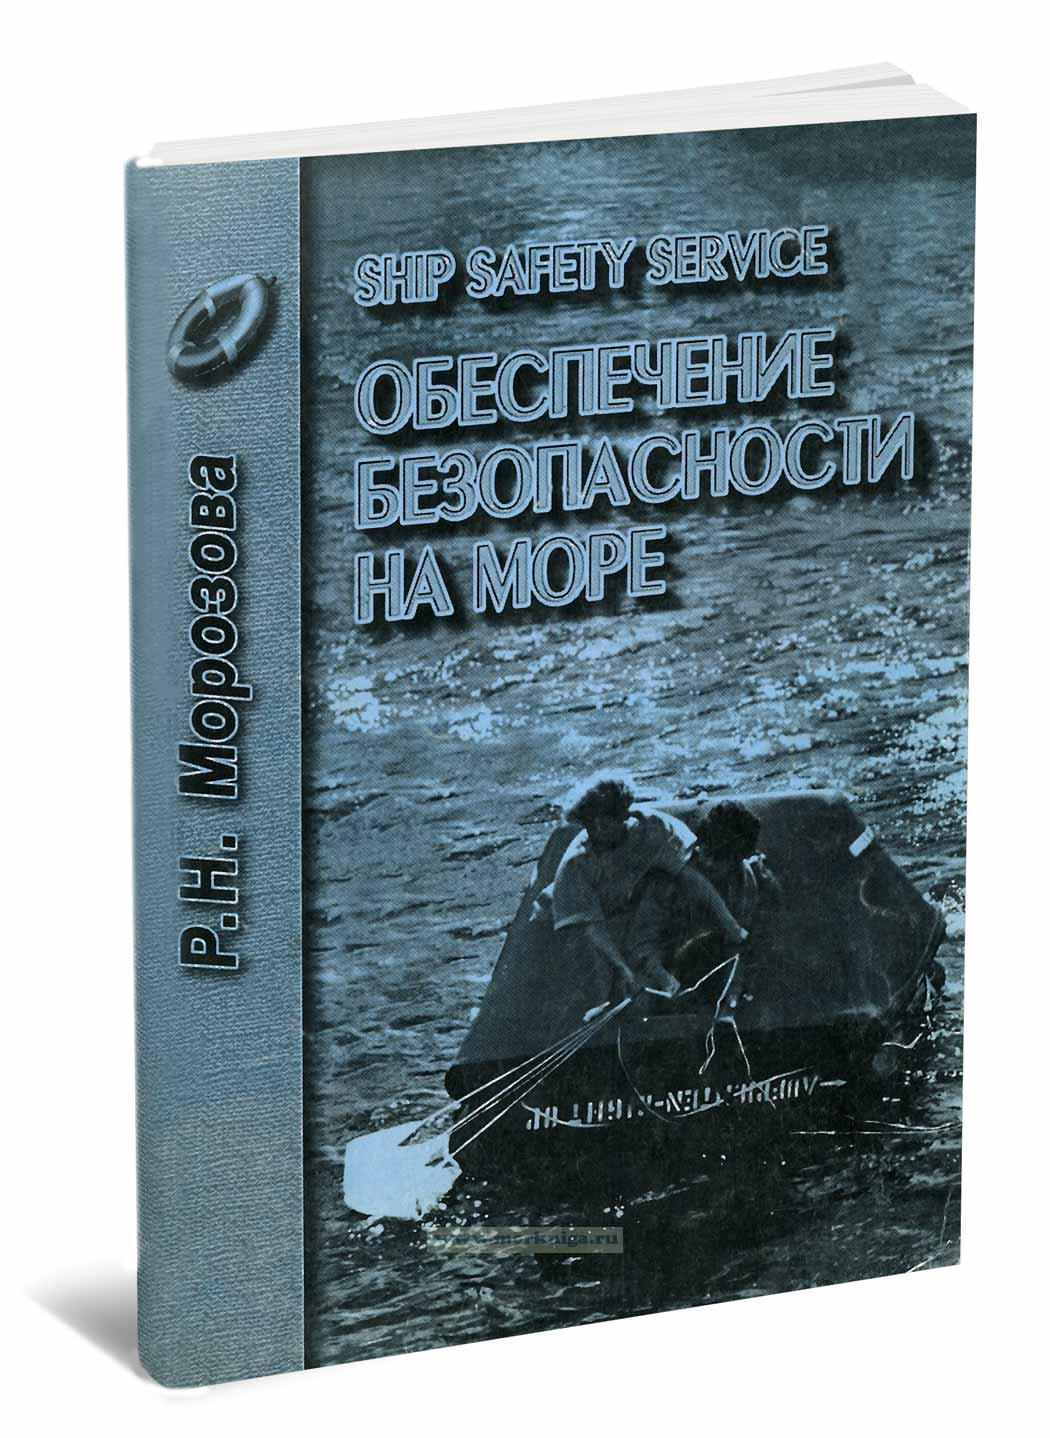 Ship safety service (обеспечение безопасности на море)